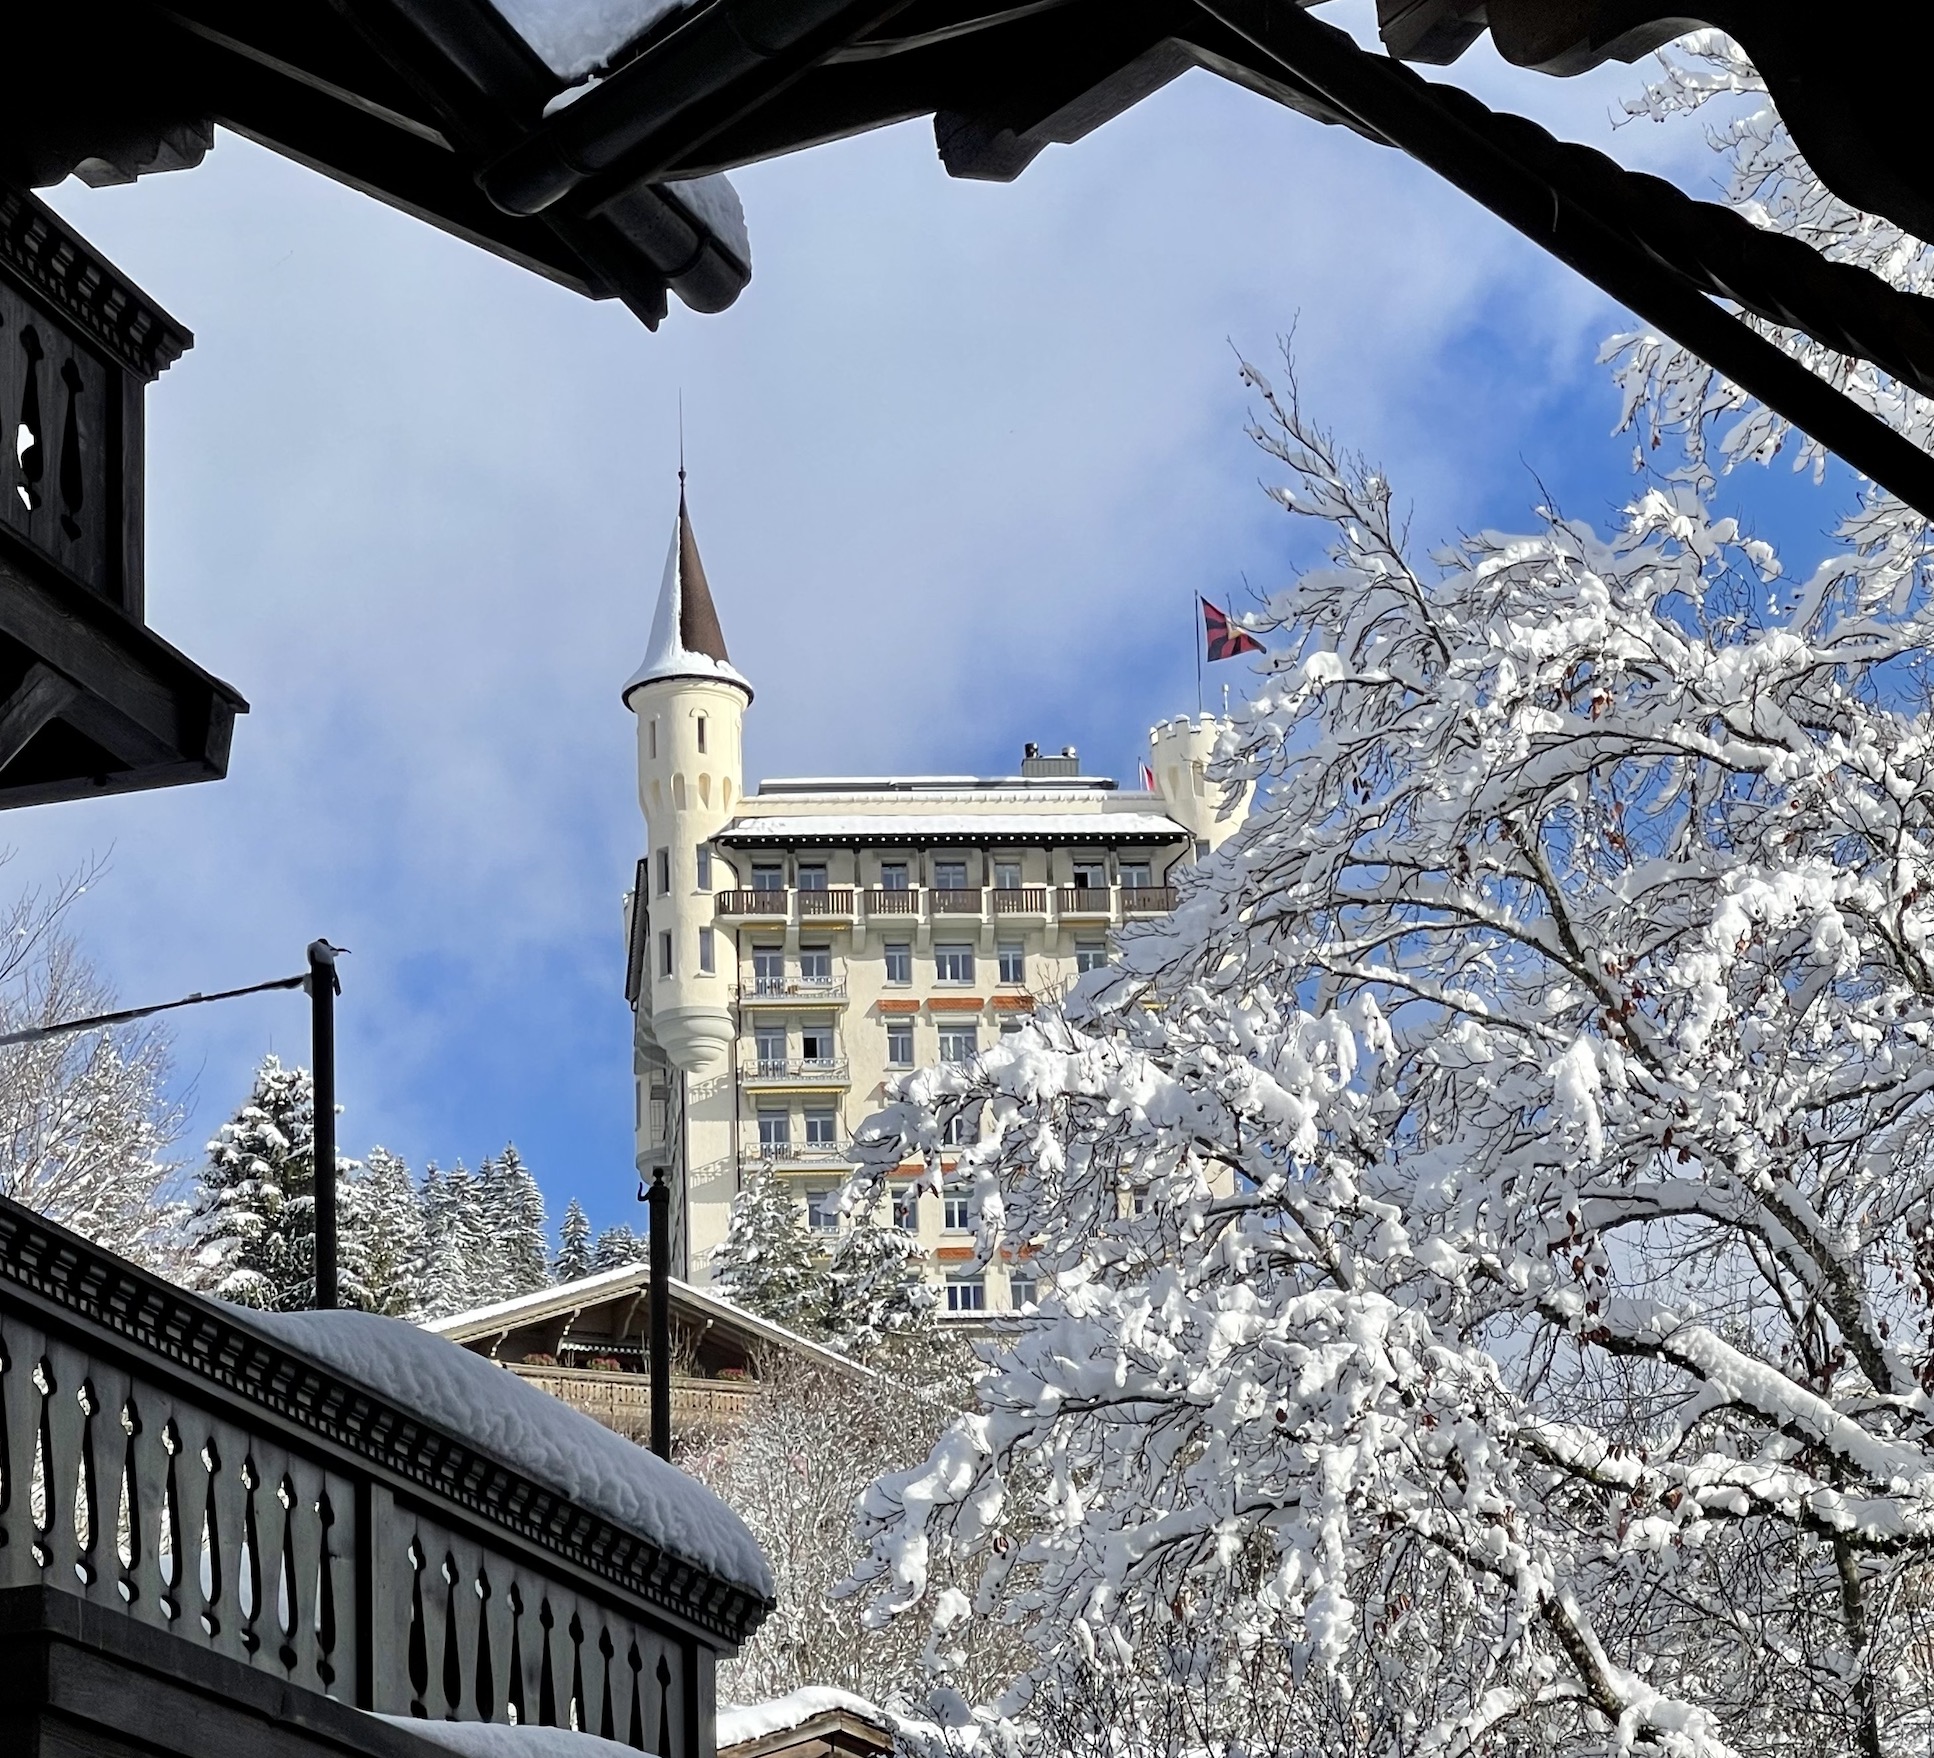 Huus Hotel Gstaad Saanen Switzerland